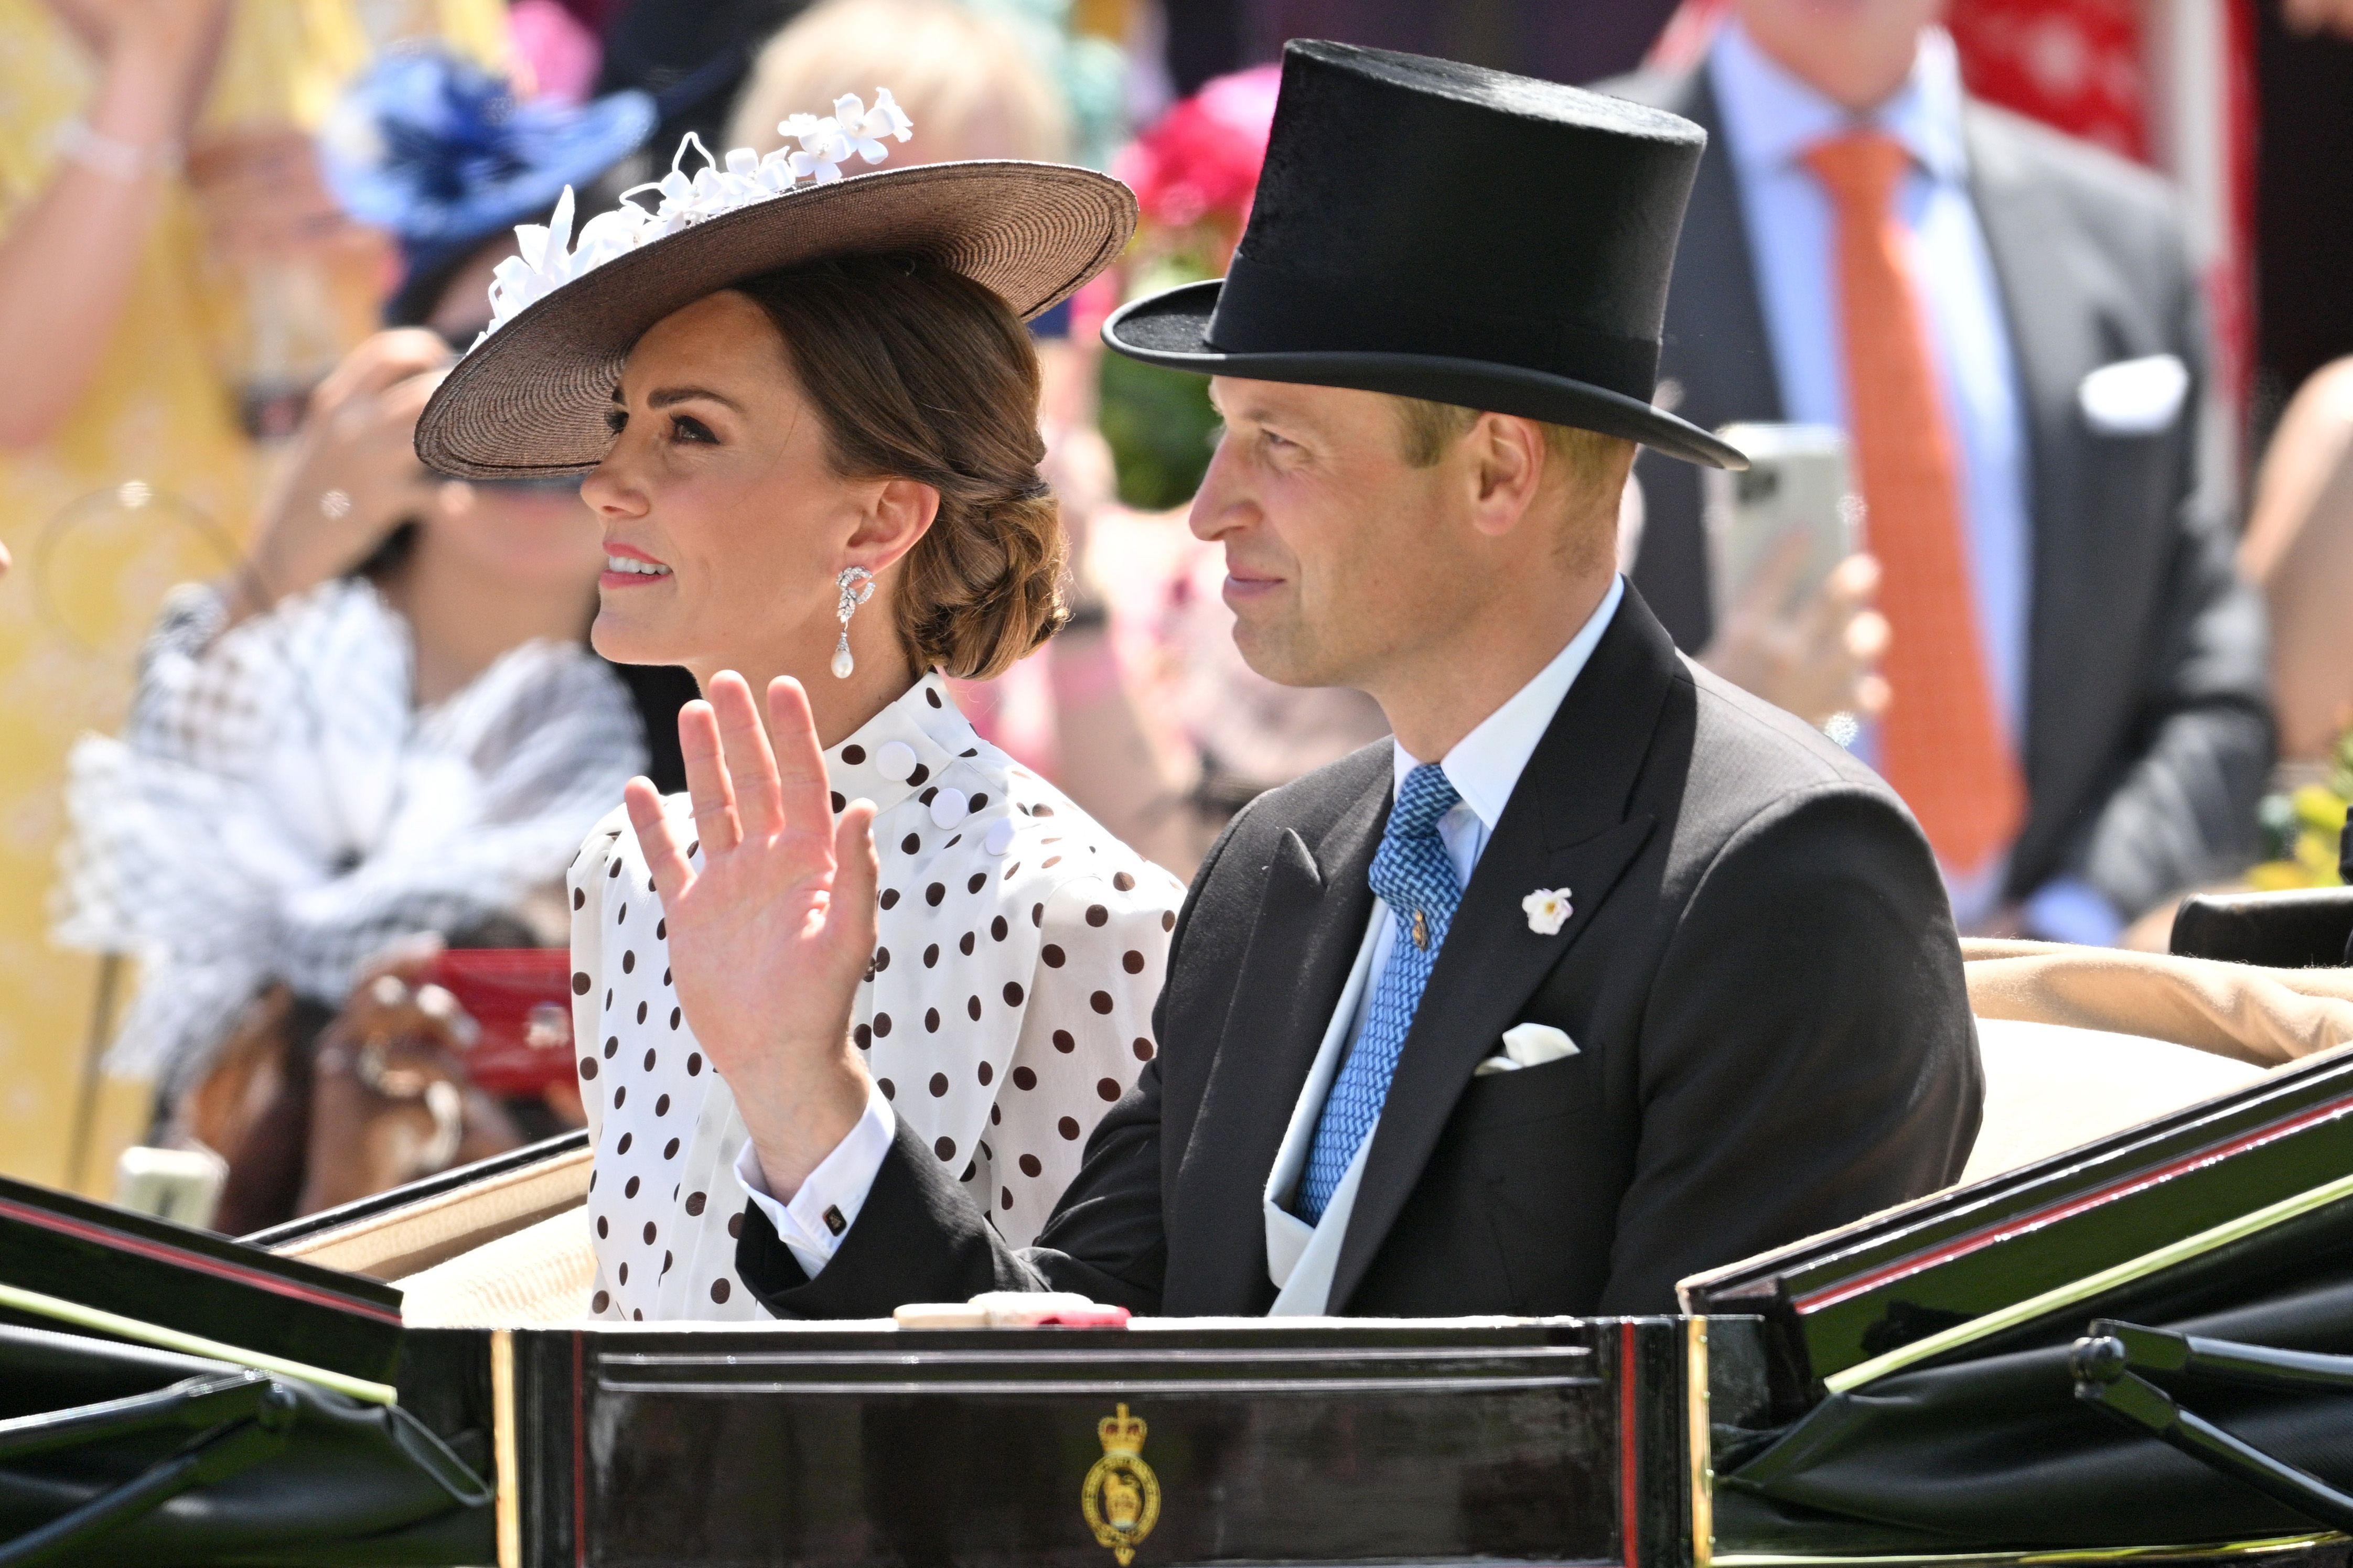 Kate Middleton's Polka Dot Dress Nods 'Pretty Woman' at Royal Ascot –  Footwear News